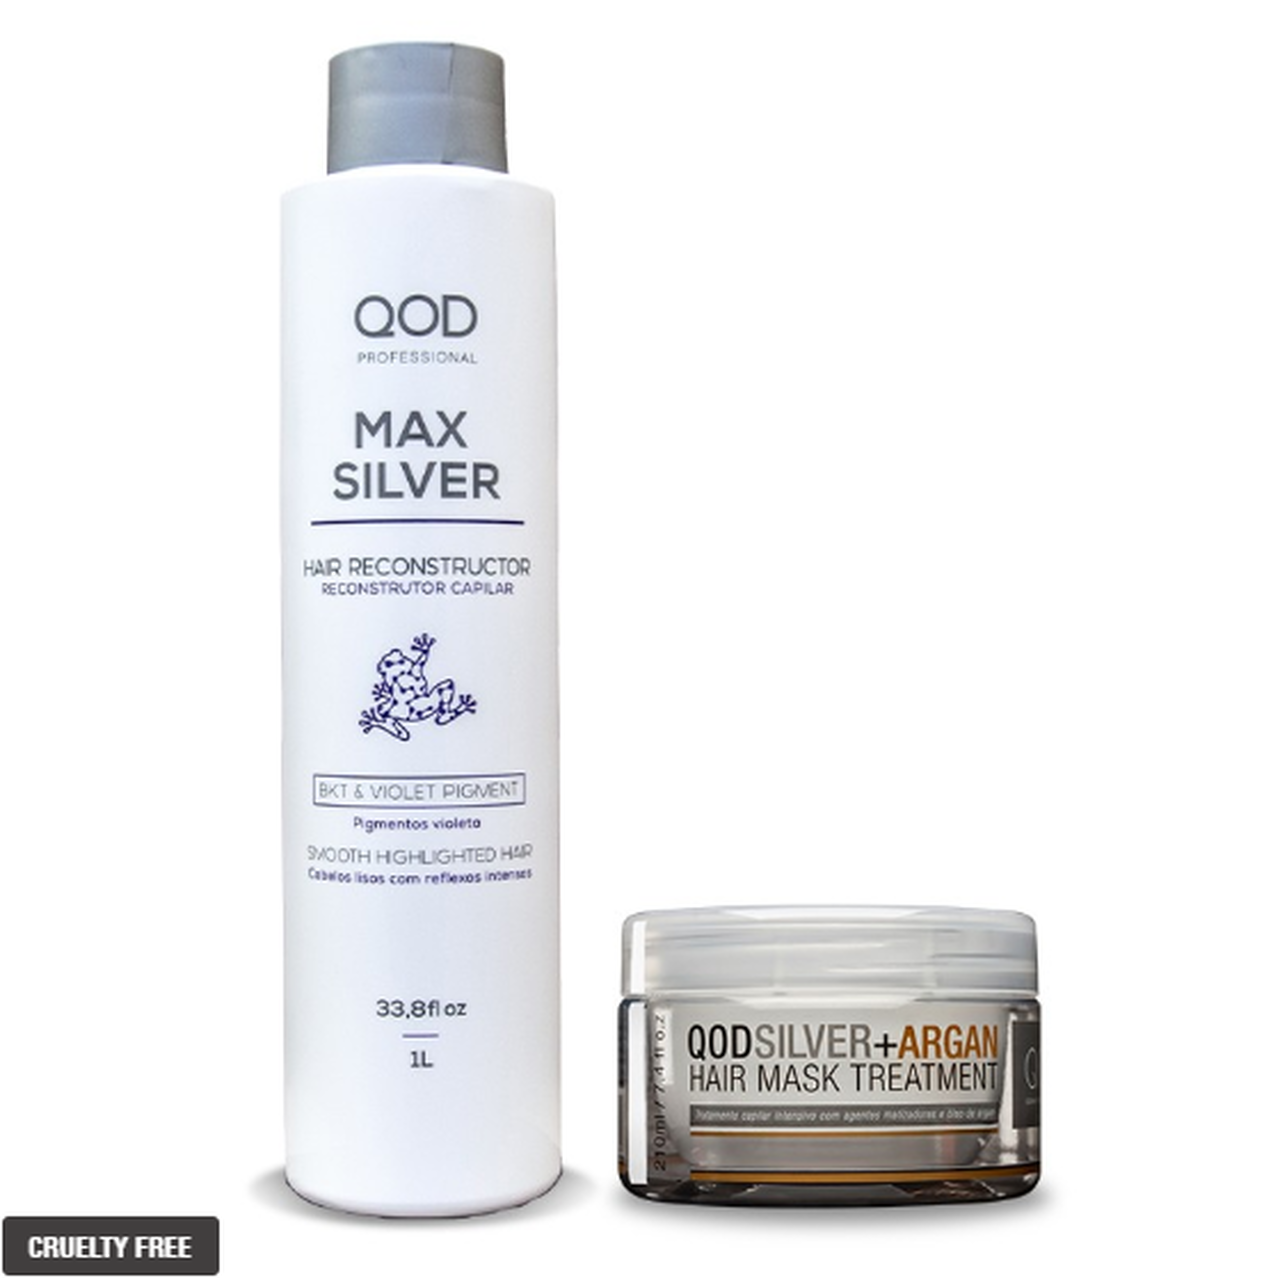 QOD Shaving & Grooming Kit Max Silver + Argan - QOD Pro - QOD